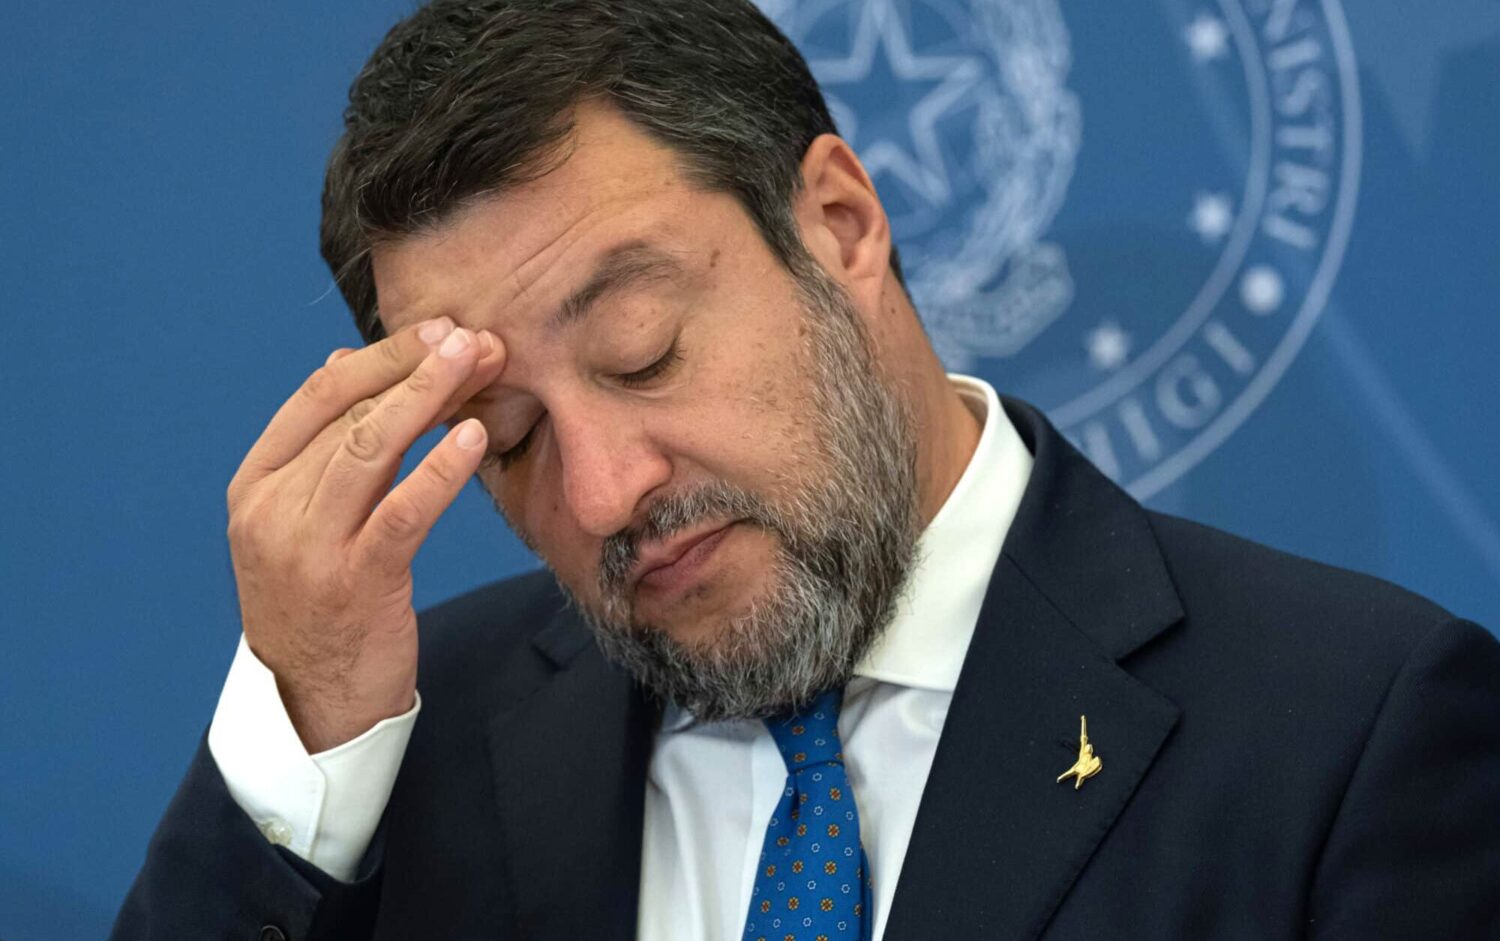 Show di Salvini al processo Open Arms, comizio in aula con le solite bugie. Dalla Guardia costiera libica al numero dei morti in mare, tutte le balle del ministro